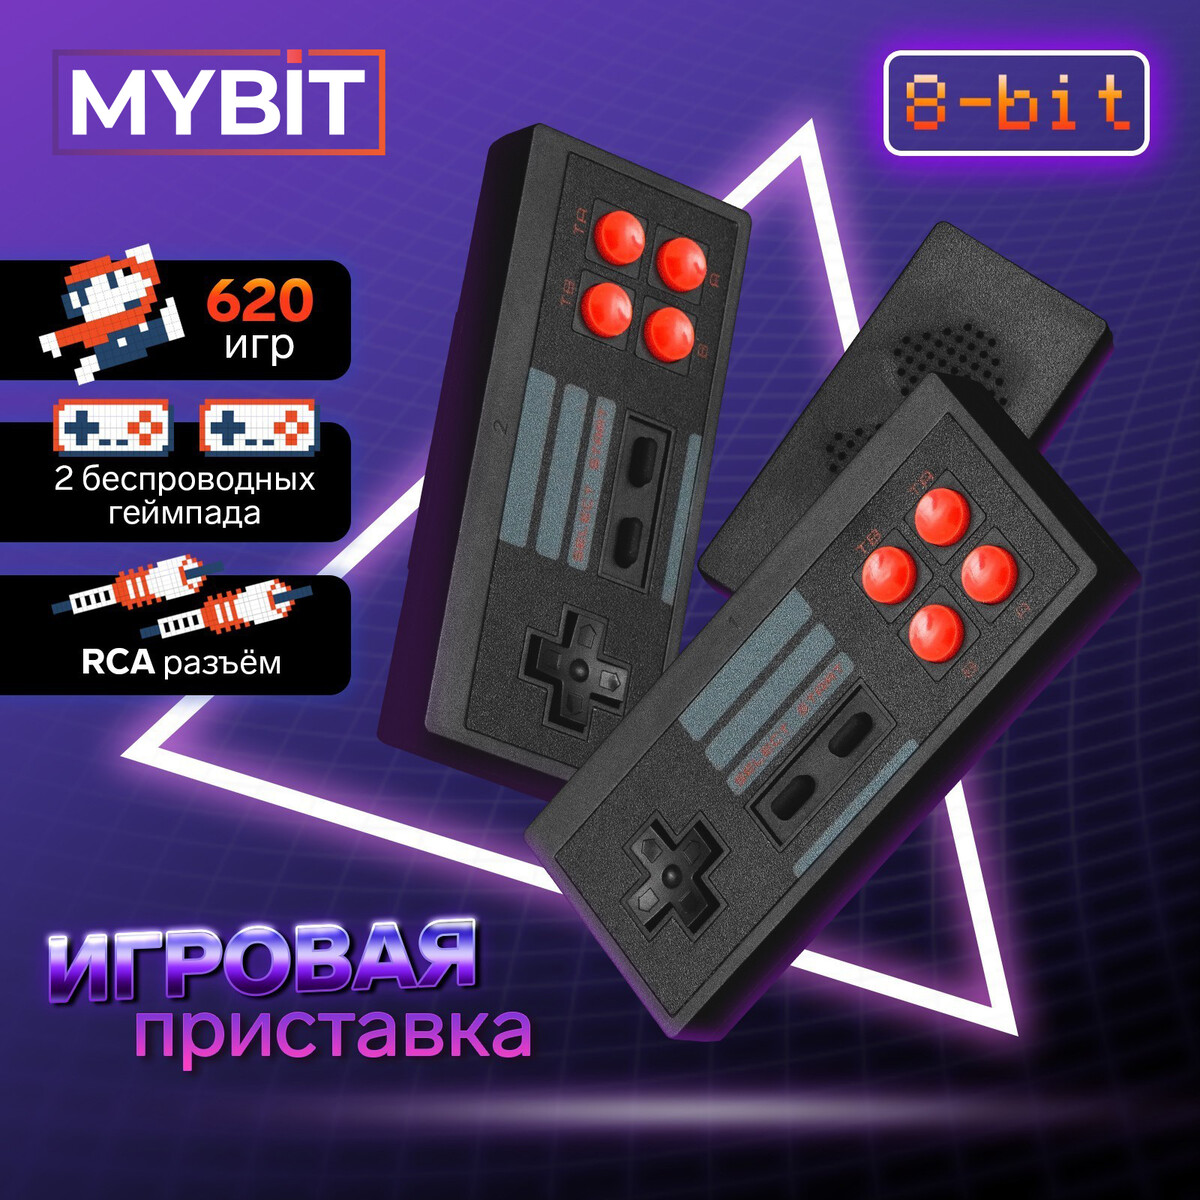 Игровая приставка mybit game-6, 8 бит, 620 игр, rca, 2 беспроводных джойстика, черная